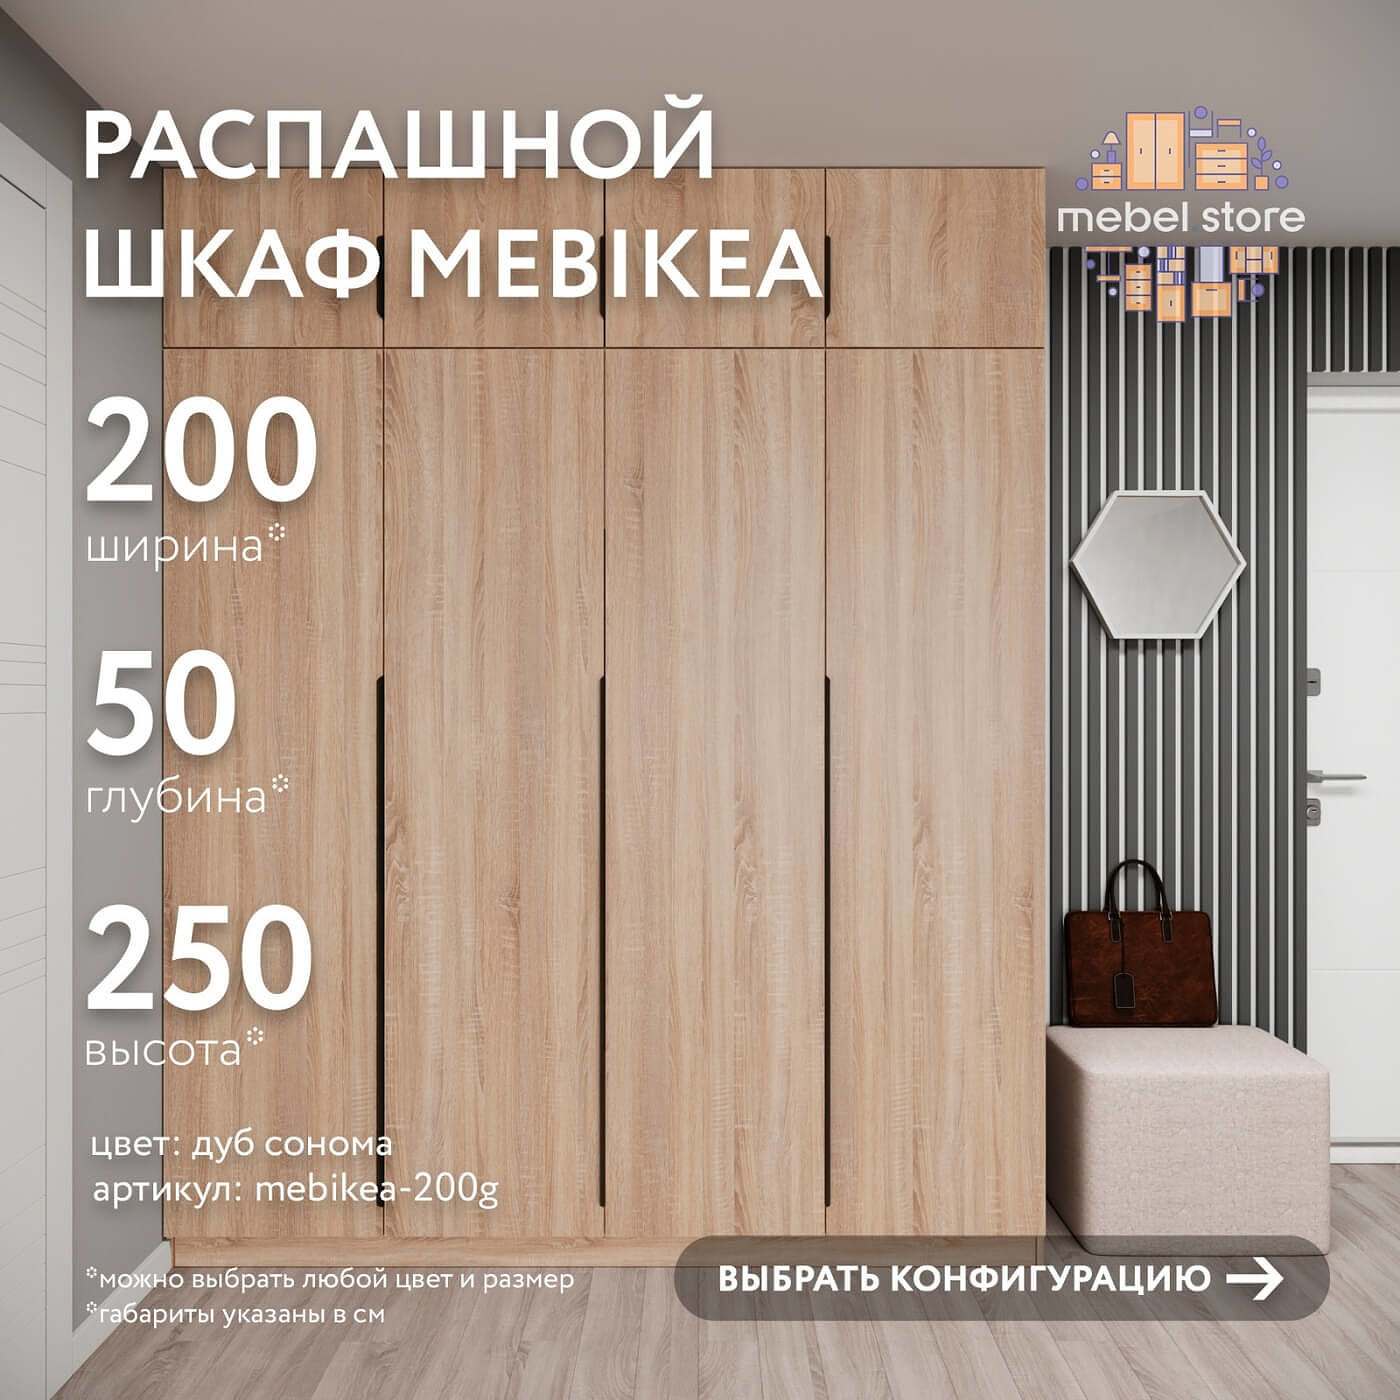 Шкаф Mebikea-200g минимализм для прихожей и спальни - фото 1 large